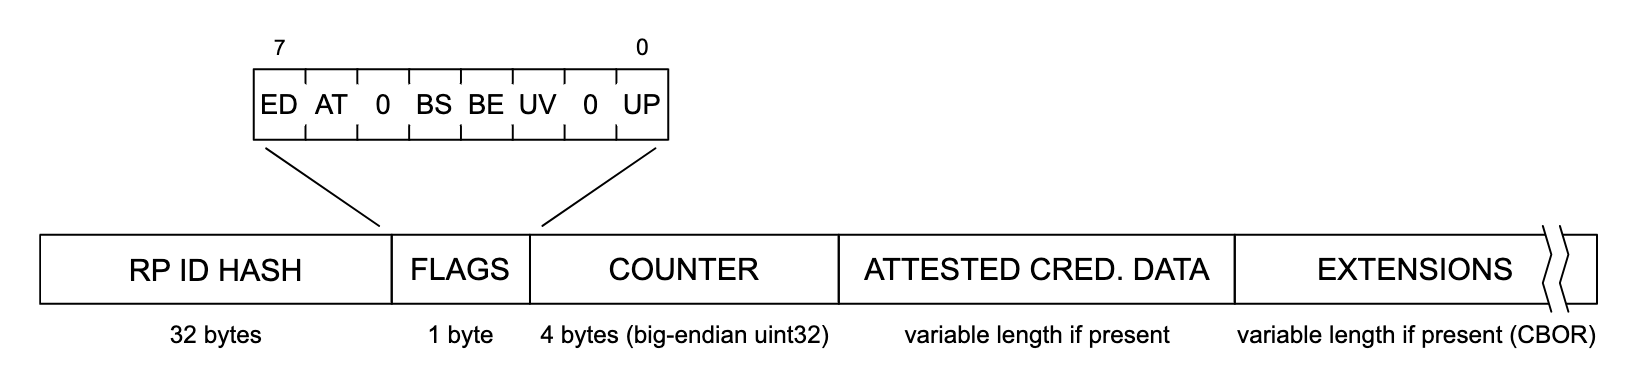 Ilustracja przedstawiająca strukturę danych dotyczących uwierzytelniania. Od lewej do prawej sekcja struktury danych ma postać „RP ID HASH” (32 bajty), „FLAGS” (1 bajt), „COUNTER” (4 bajty, big-endian uint32) i „ATTESTE CRED”. DATA” (zmienna długość, jeśli występuje) i „EXTENSIONS” (zmienna długość, jeśli występuje (CBOR)). Sekcja „FLAGS” jest rozwinięta i wyświetla listę potencjalnych flag oznaczonych od lewej do prawej: „ED”, „AT”, „0”, „BS”, „BE”, „UV”, „0” i „UP”.